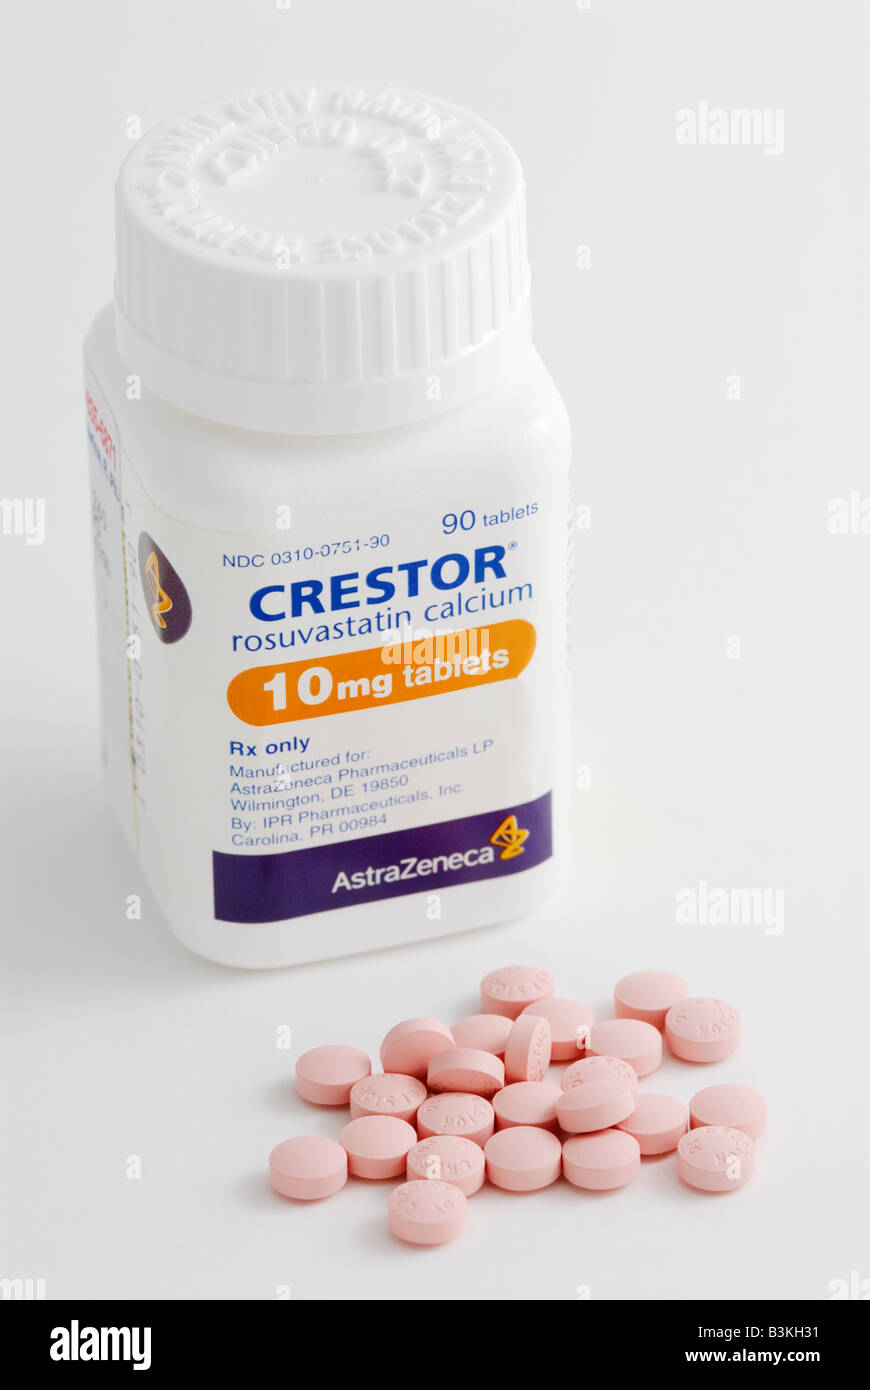 La rosuvastatine Crestor comprimés de marque le médicament est une statine pour traiter les gens avec un taux élevé de cholestérol Banque D'Images